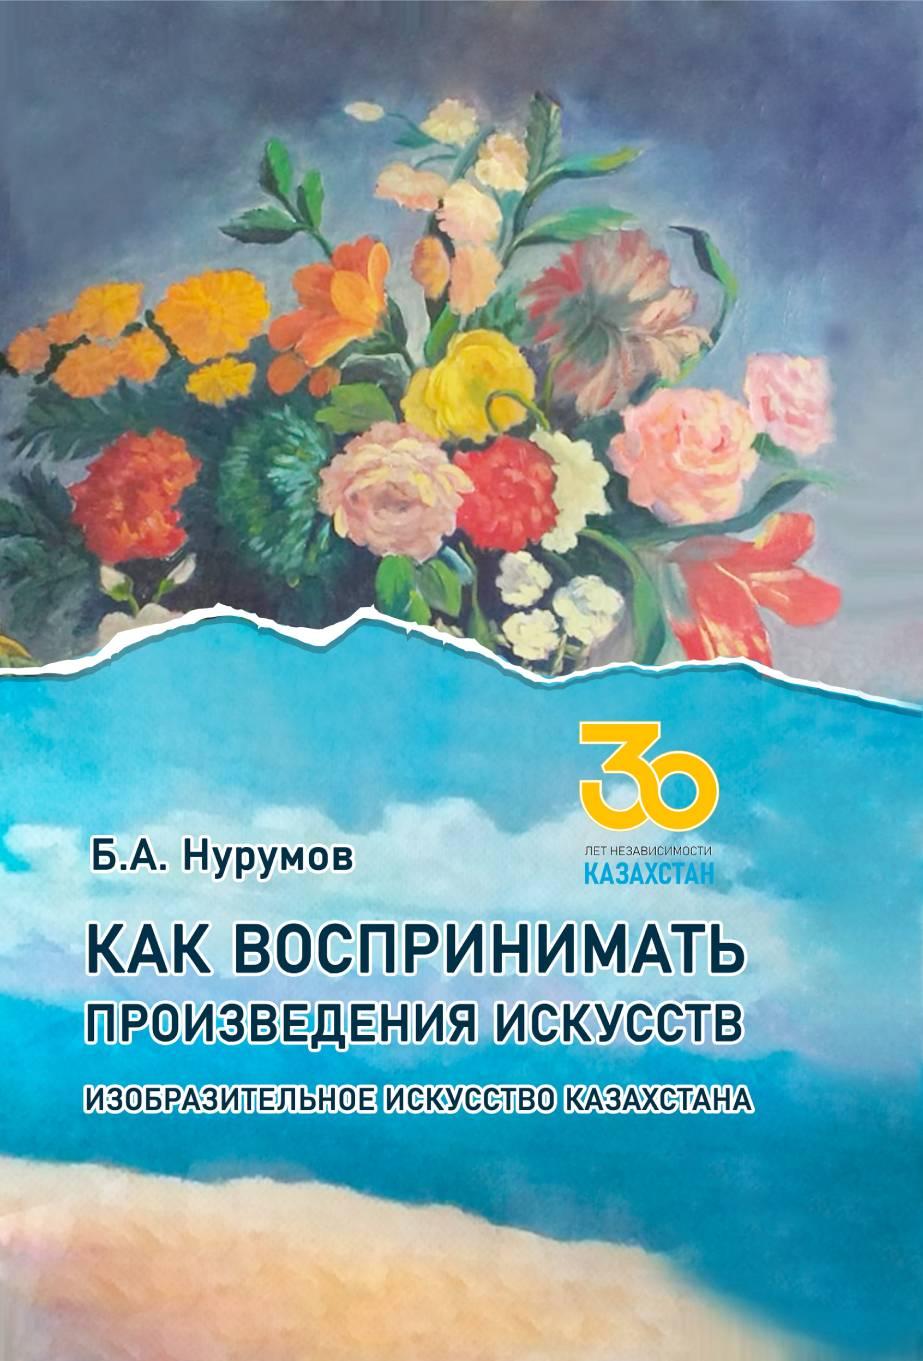 Как воспринимать произведения искусств. Изобразительное искусство Казахстана.